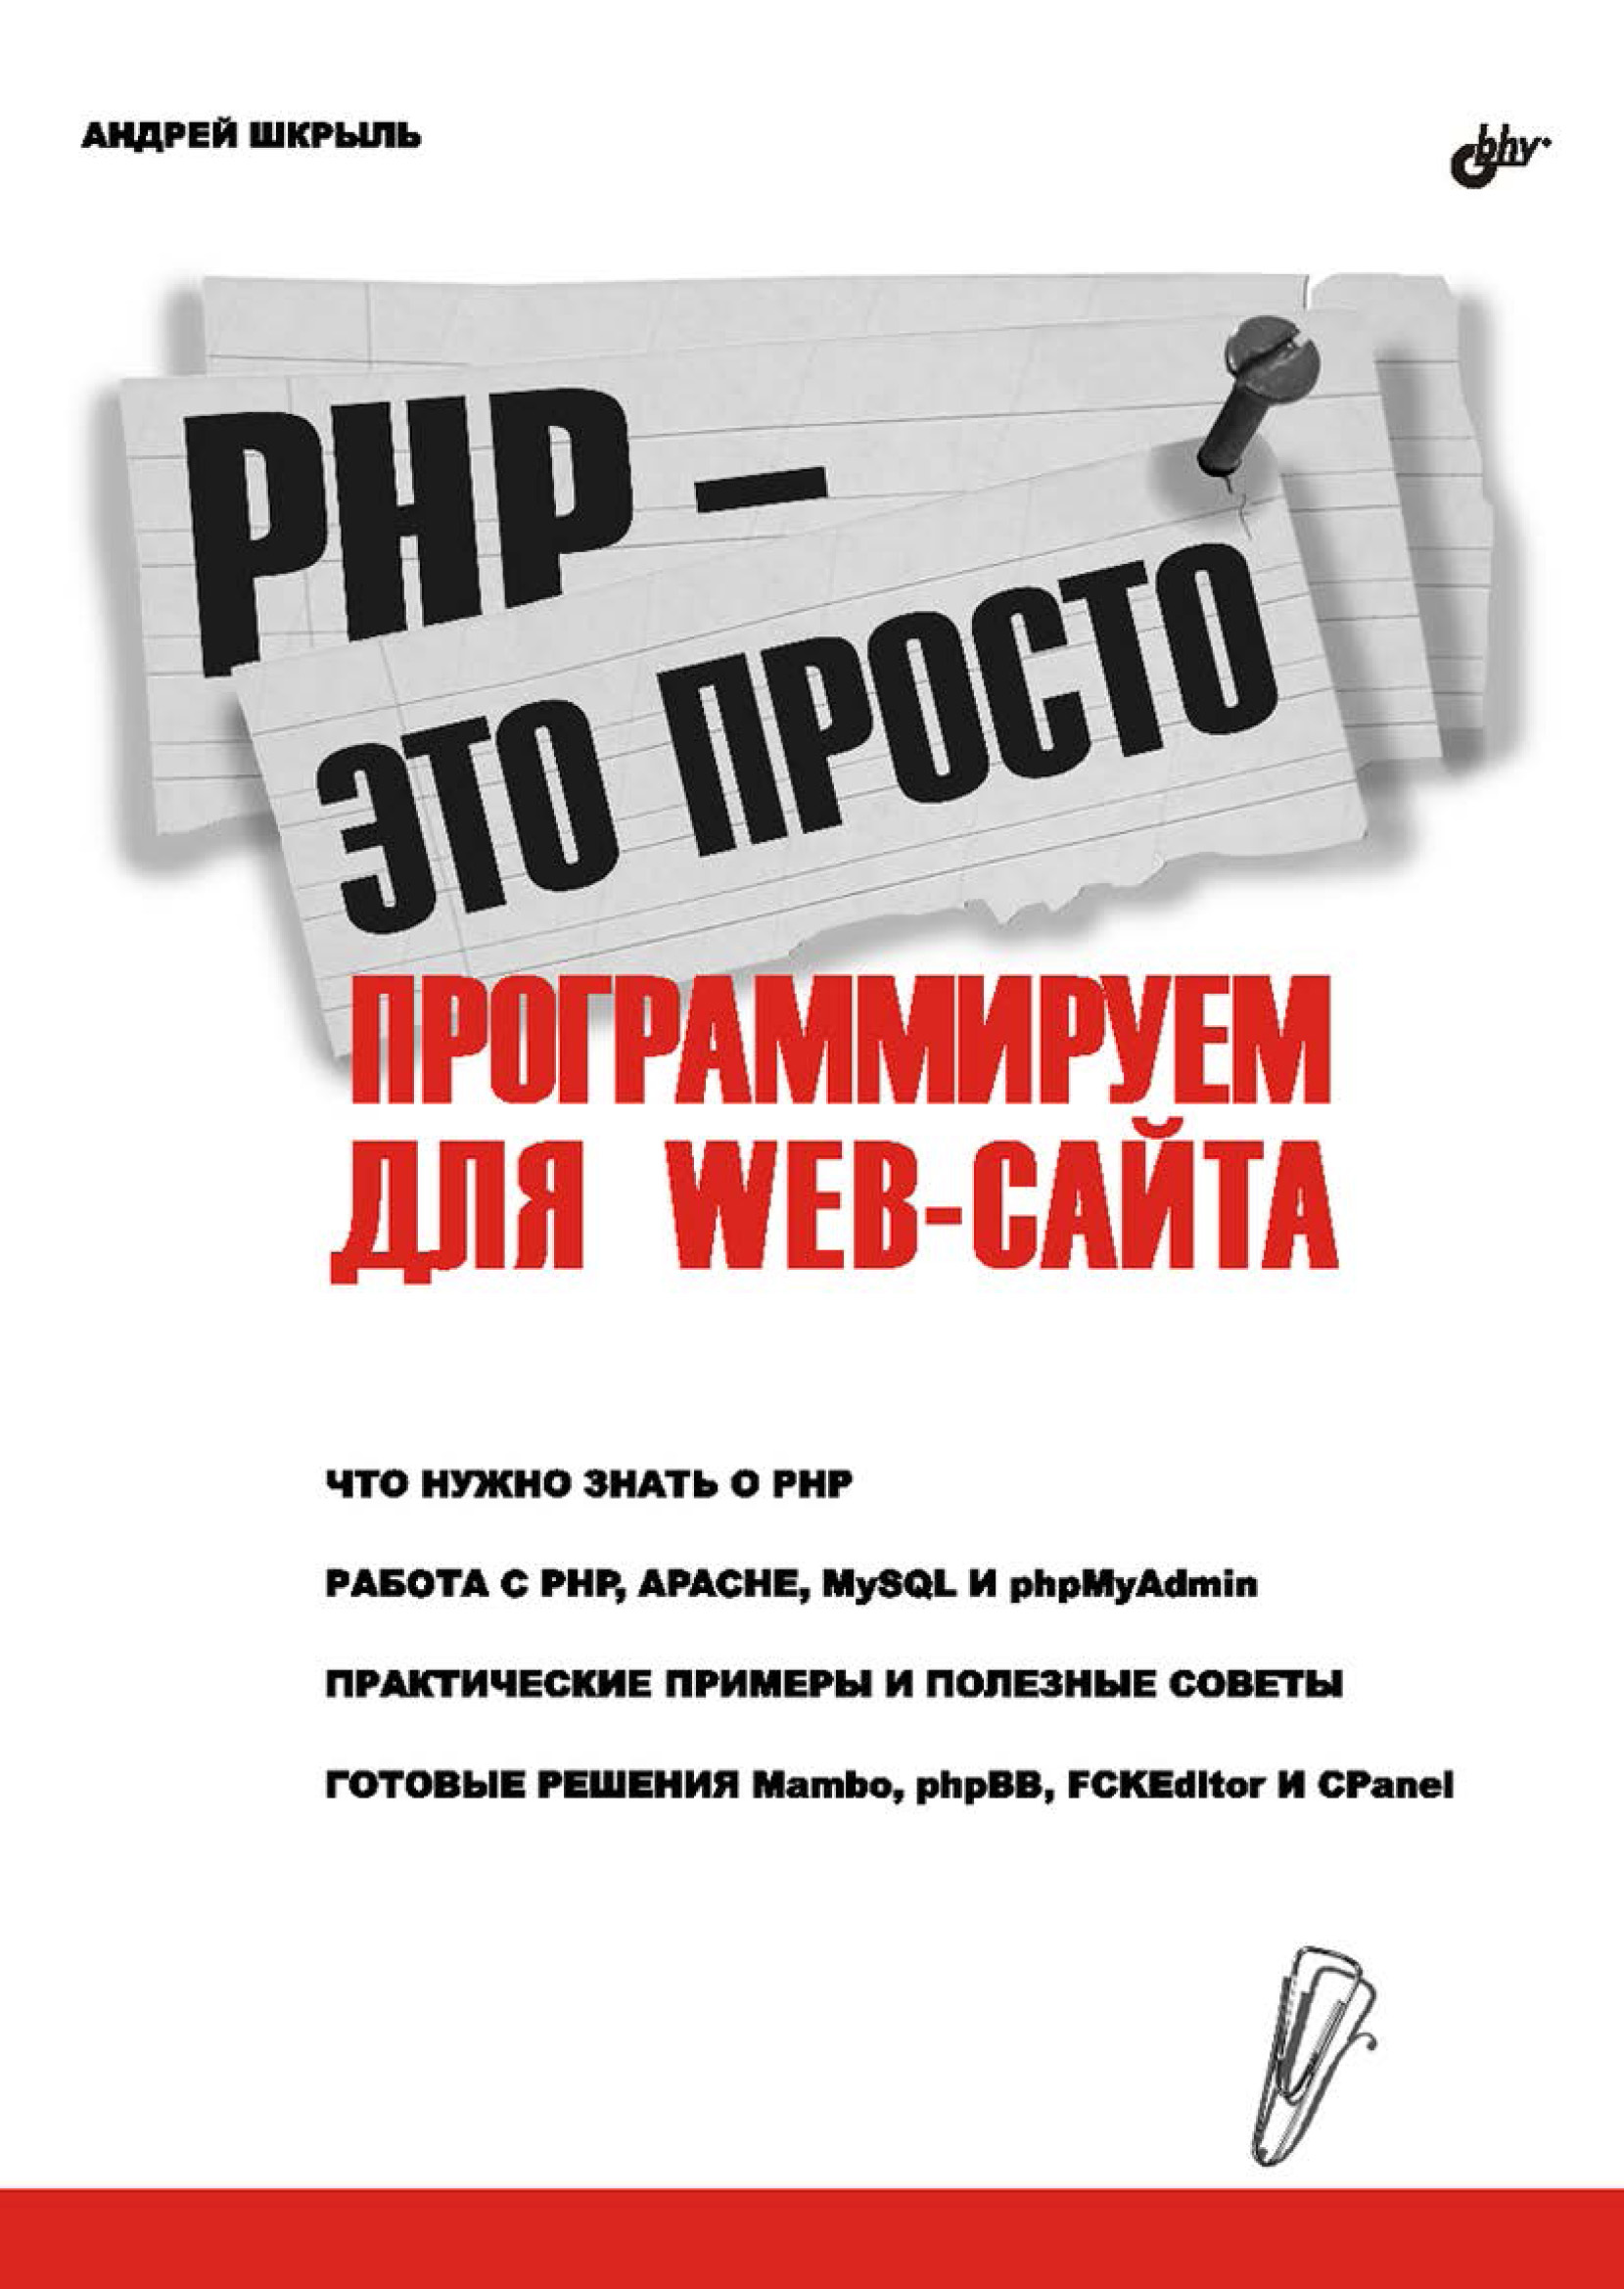 Книга  PHP – это просто. Программируем для Web-сайта созданная Андрей Шкрыль может относится к жанру базы данных, интернет, программирование. Стоимость электронной книги PHP – это просто. Программируем для Web-сайта с идентификатором 6657973 составляет 127.00 руб.